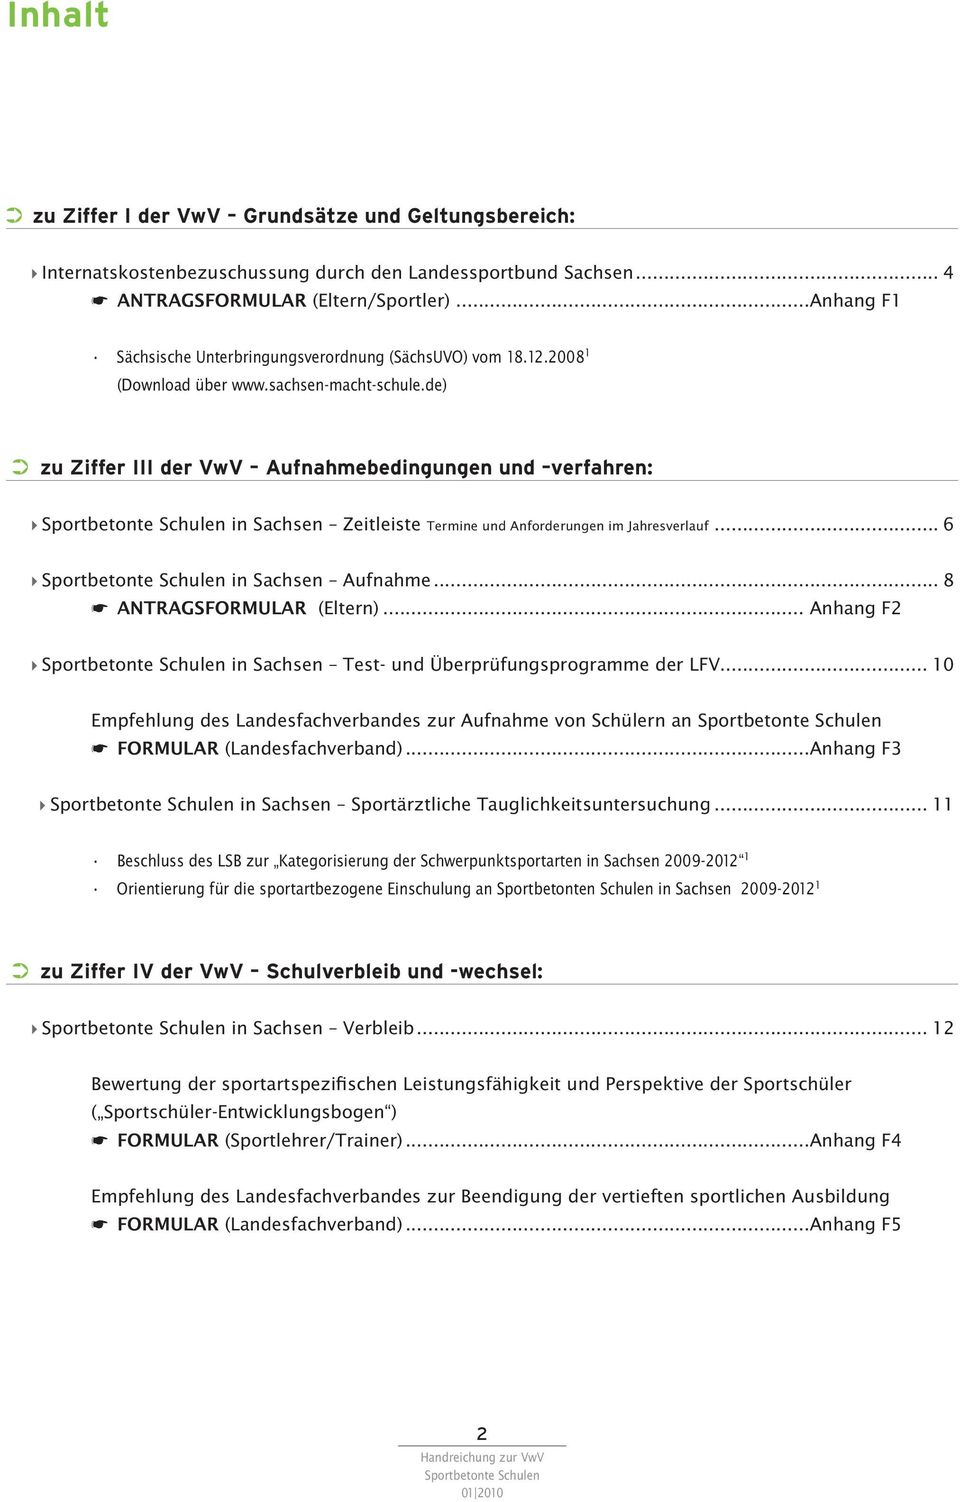 de) zu Ziffer III der VwV Aufnahmebedingungen und verfahren: 4 in Sachsen Zeitleiste Termine und Anforderungen im Jahresverlauf... 6 4 in Sachsen Aufnahme... 8 * ANTRAGSFORMULAR (Eltern).